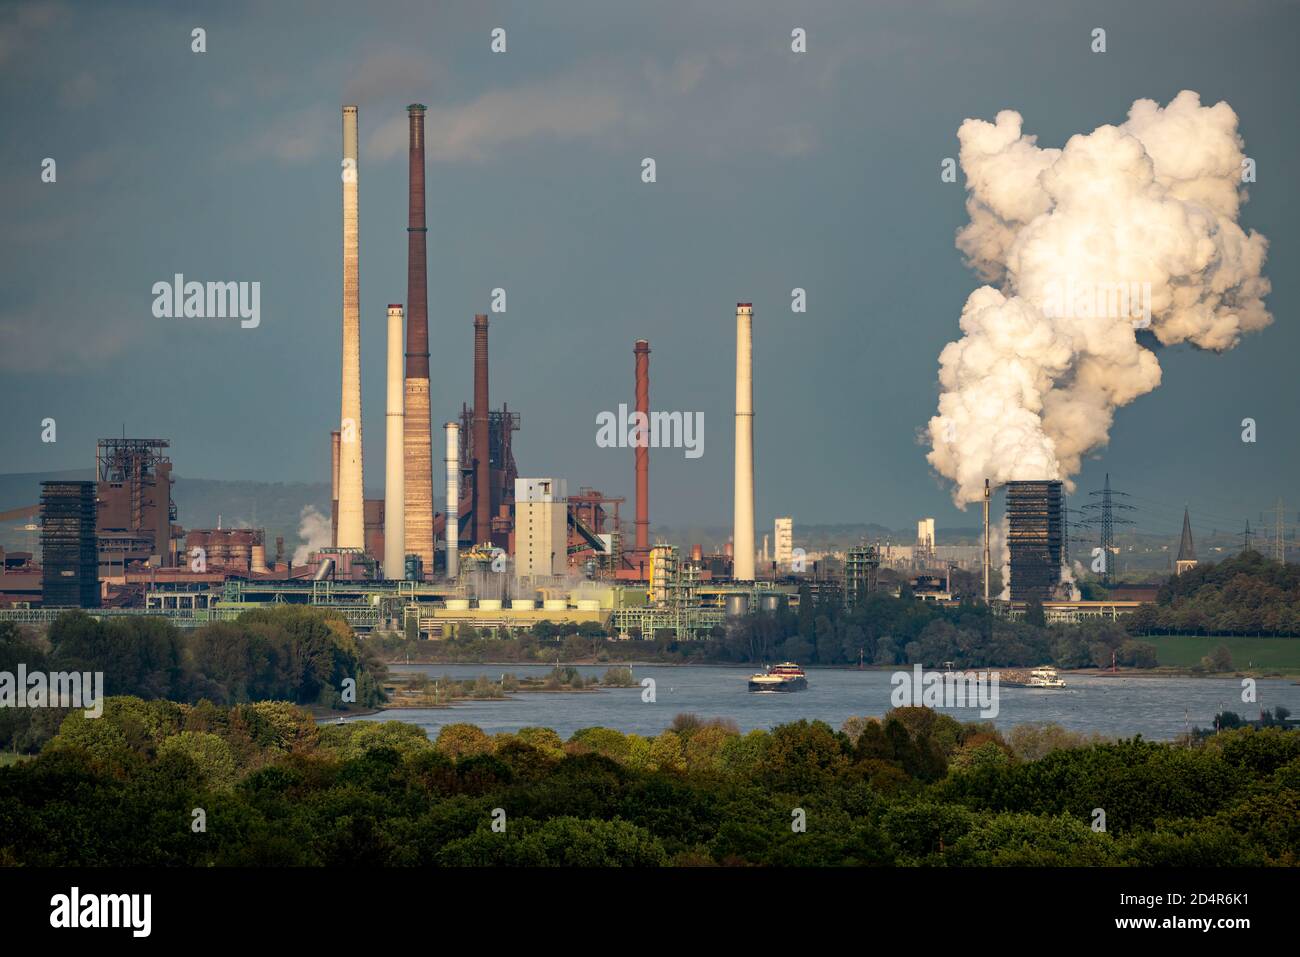 Usine d'acier ThyssenKrupp à Duisburg-Marxloh, haut fourneau Schwelgern 1, Schwarzer Riese, nuage de dégagement de l'usine de cokéfaction de Schwelgern, cheminée de l'usine de frittage, Banque D'Images